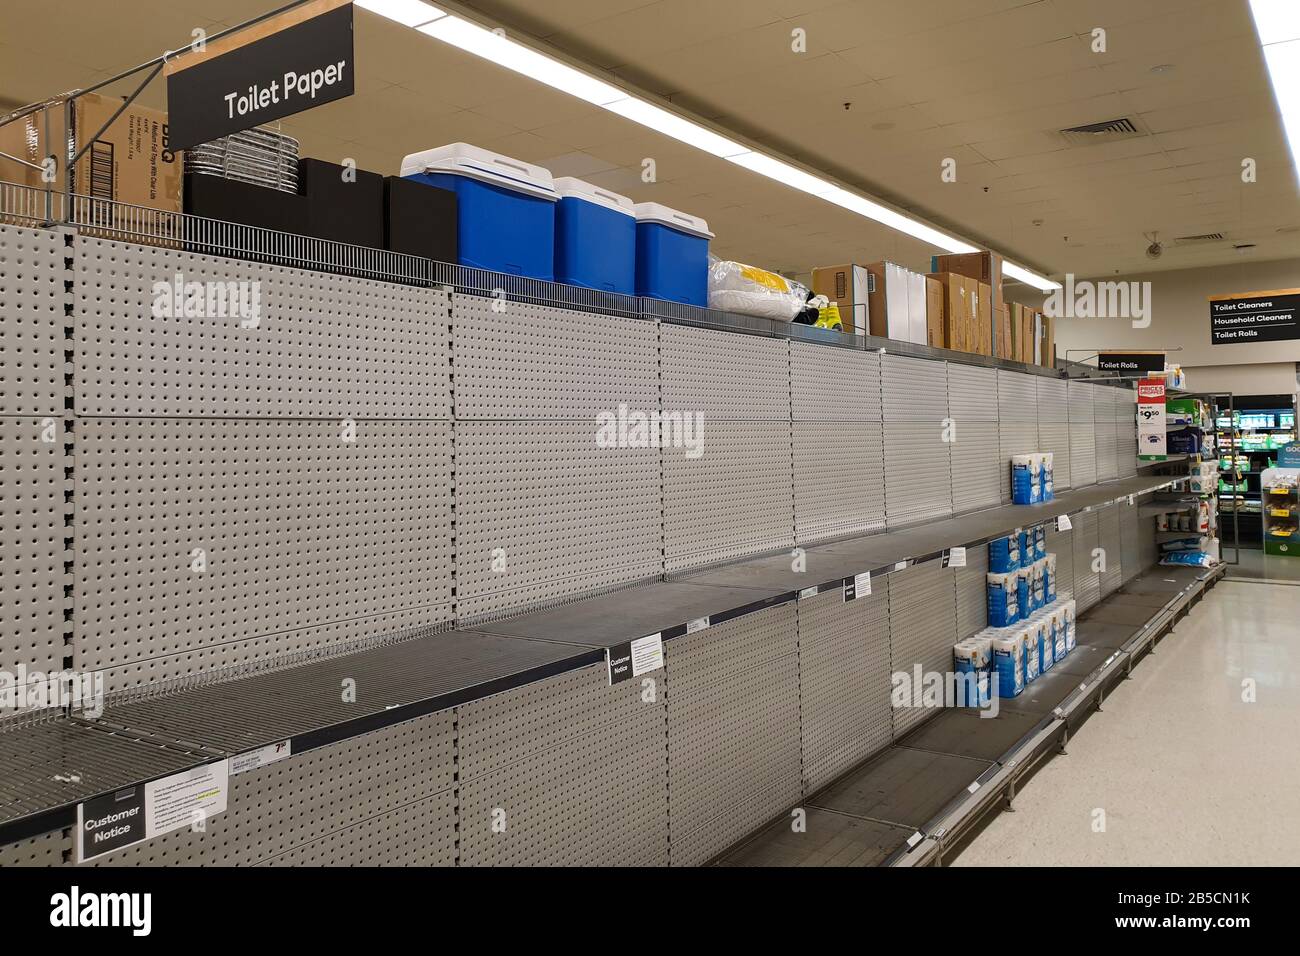 Costa de Oro, Australia - 8 de marzo de 2020: Supermercados vacíos estantes de papel higiénico en medio de los temores de coronavirus, los compradores pánico a la compra de papel higiénico Foto de stock